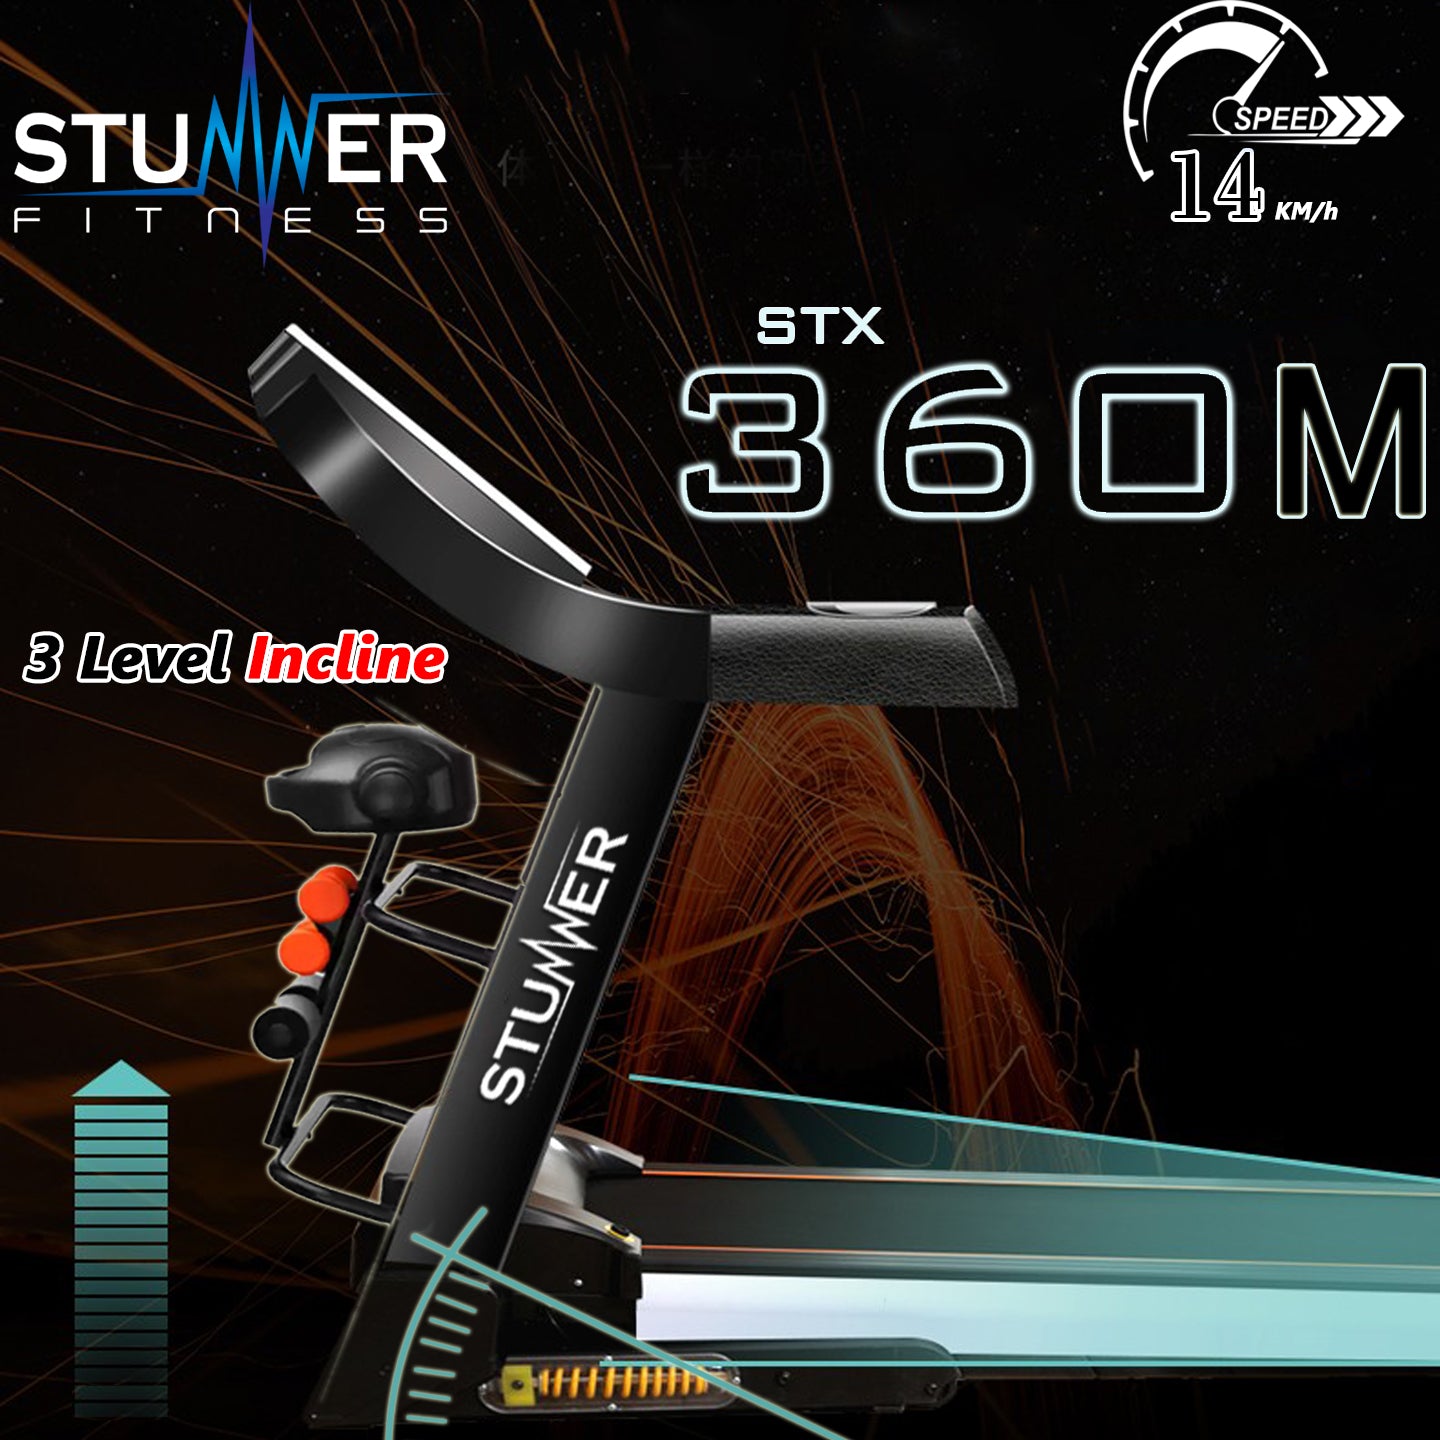 STX-360M Motorized Treadmill